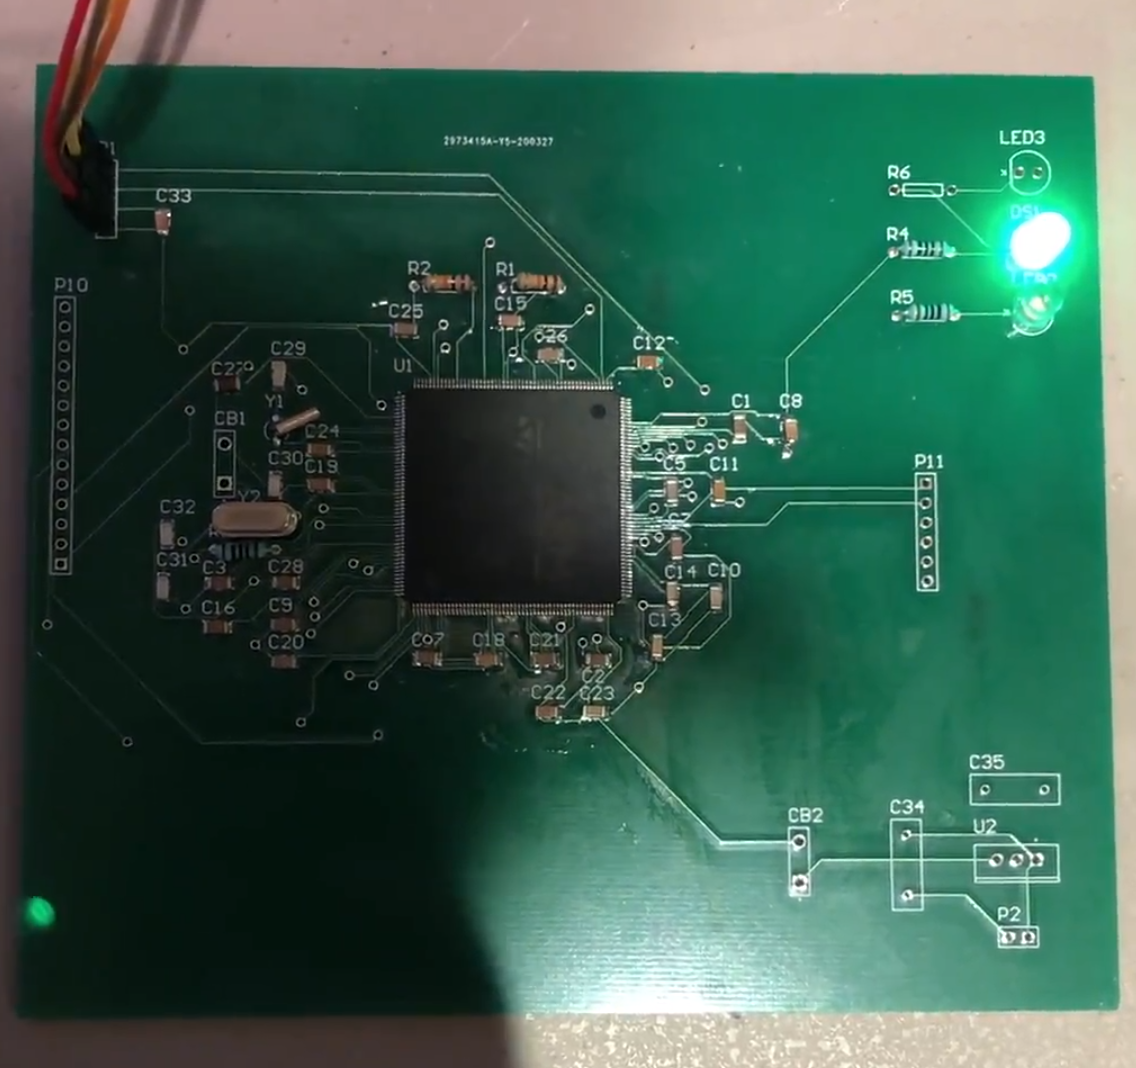 A Better Arduino: Setting up an STM32 Development Platform (Part 1)